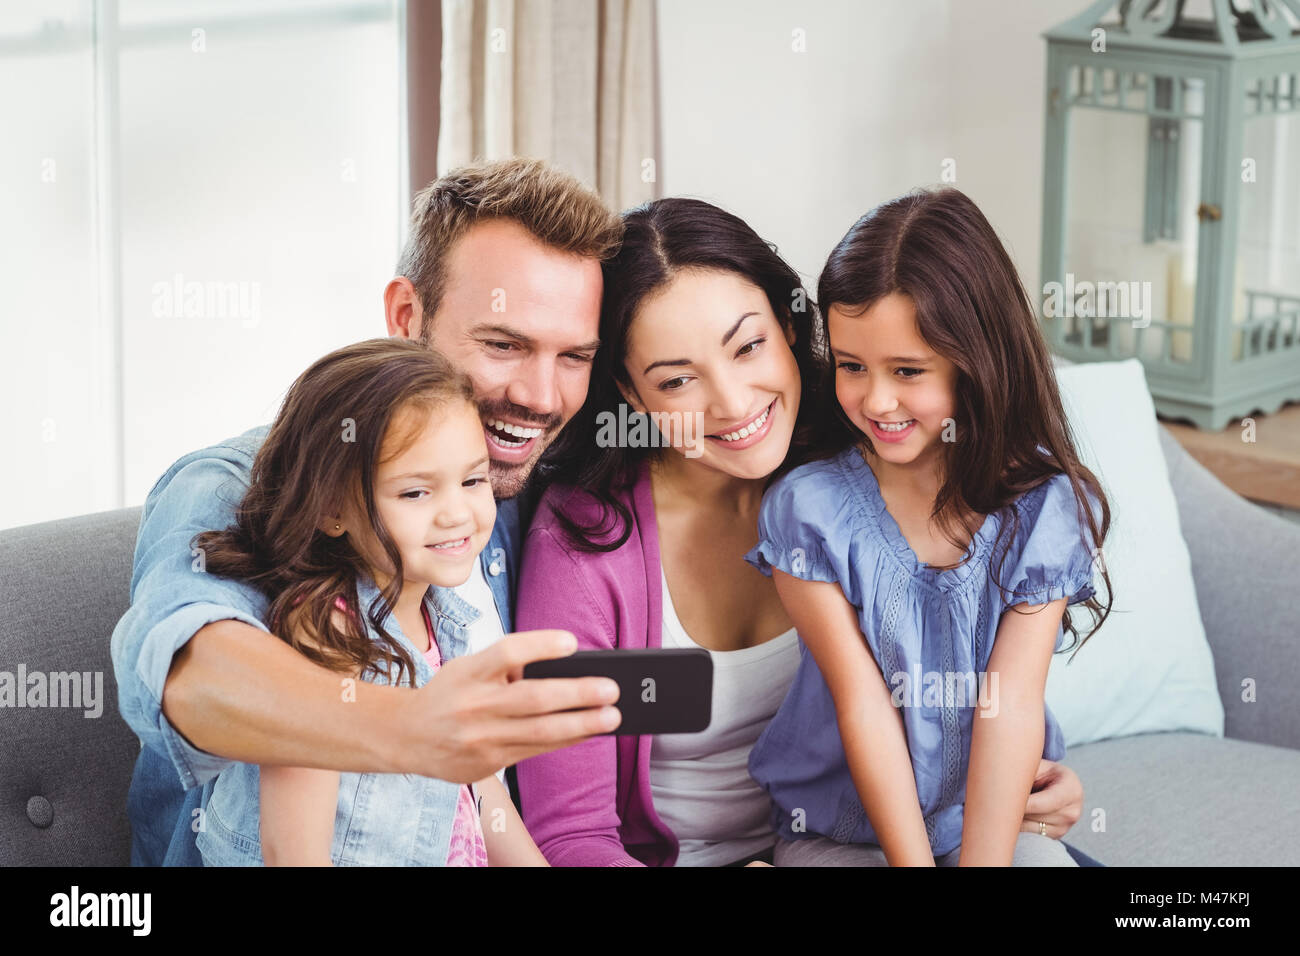 Family smiling tout en tenant le téléphone mobile selfies Banque D'Images